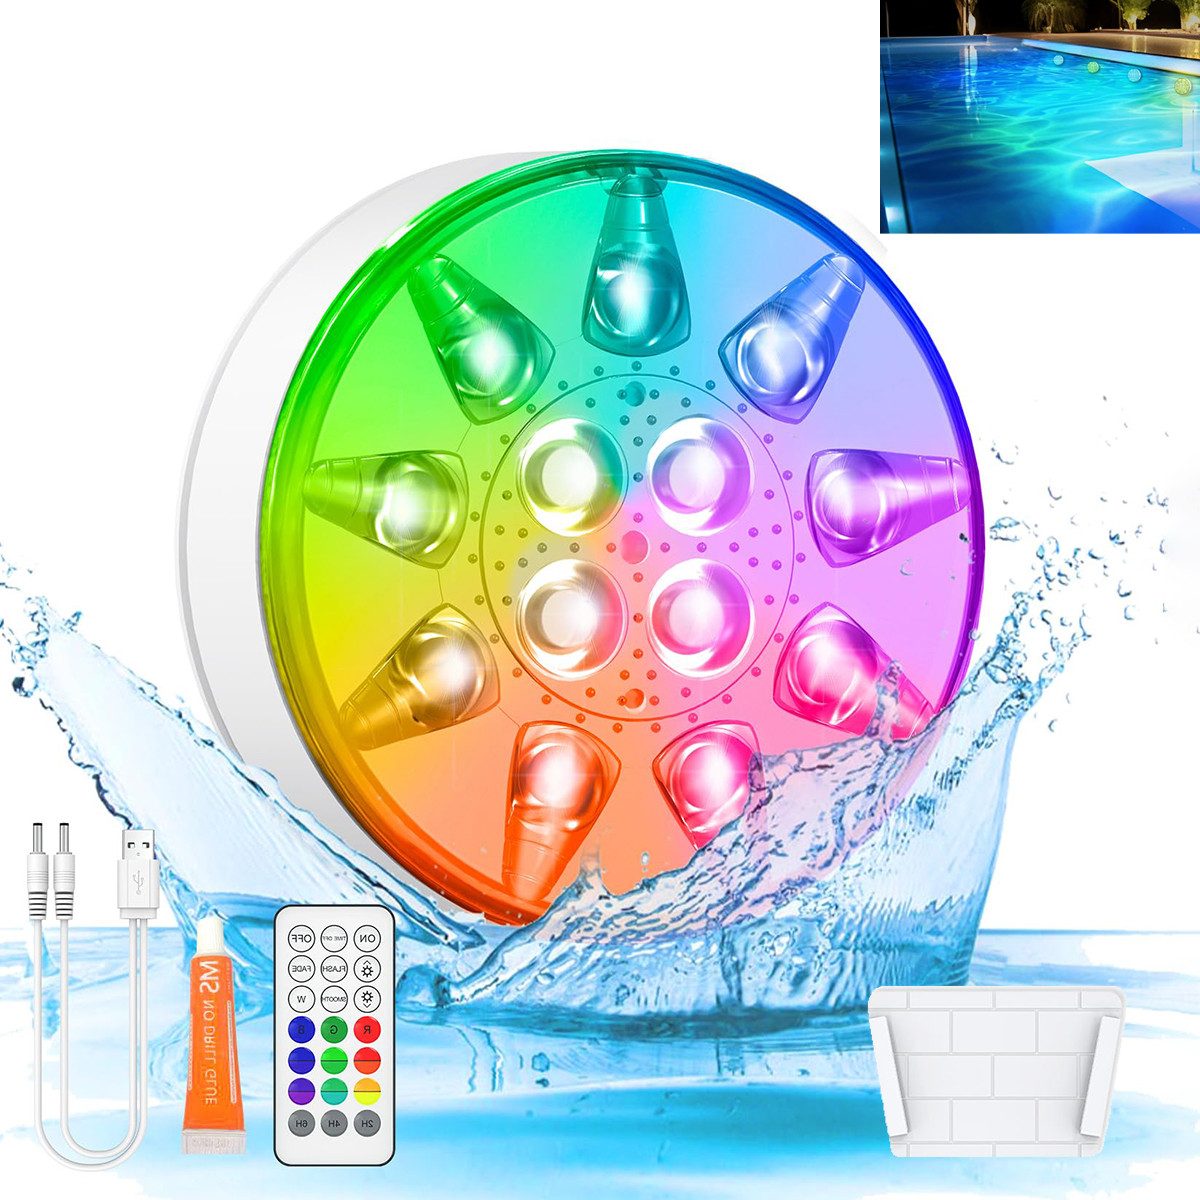 Novzep Pool-Lampe LED-Tauchleuchte, schwimmende Poolbeleuchtung, wiederaufladbar, 16 Farben RGB, IP68 wasserdicht, mit Fernbedienung, Timer